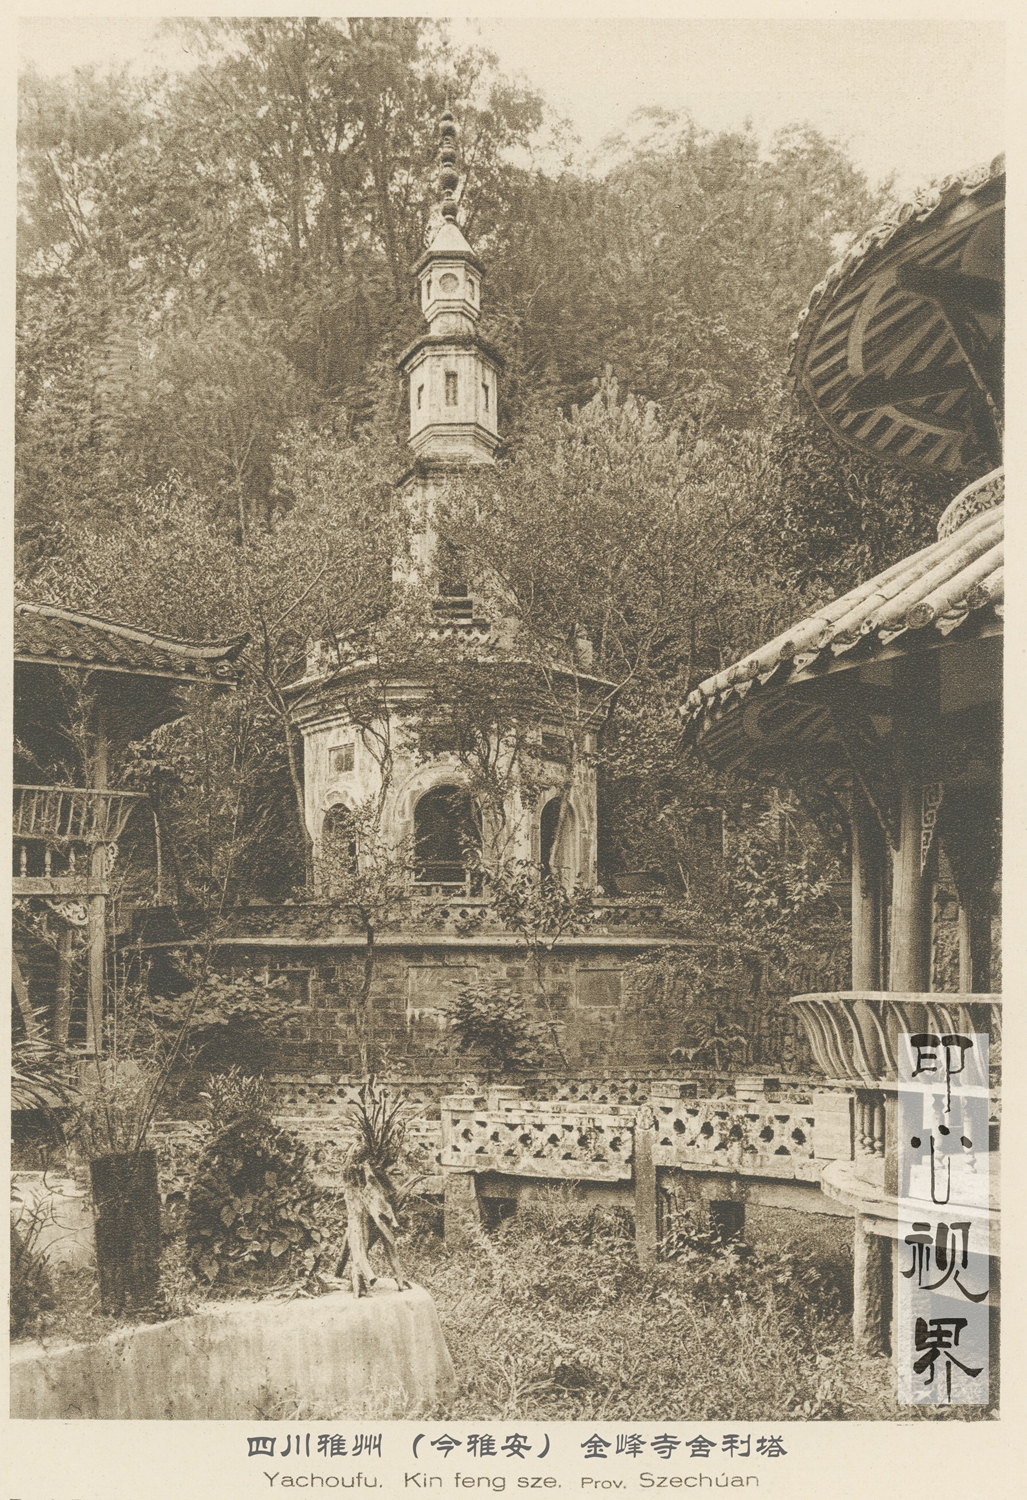 四川雅州(今雅安)金峰寺舍利塔--1926年《中国的建筑与景观》